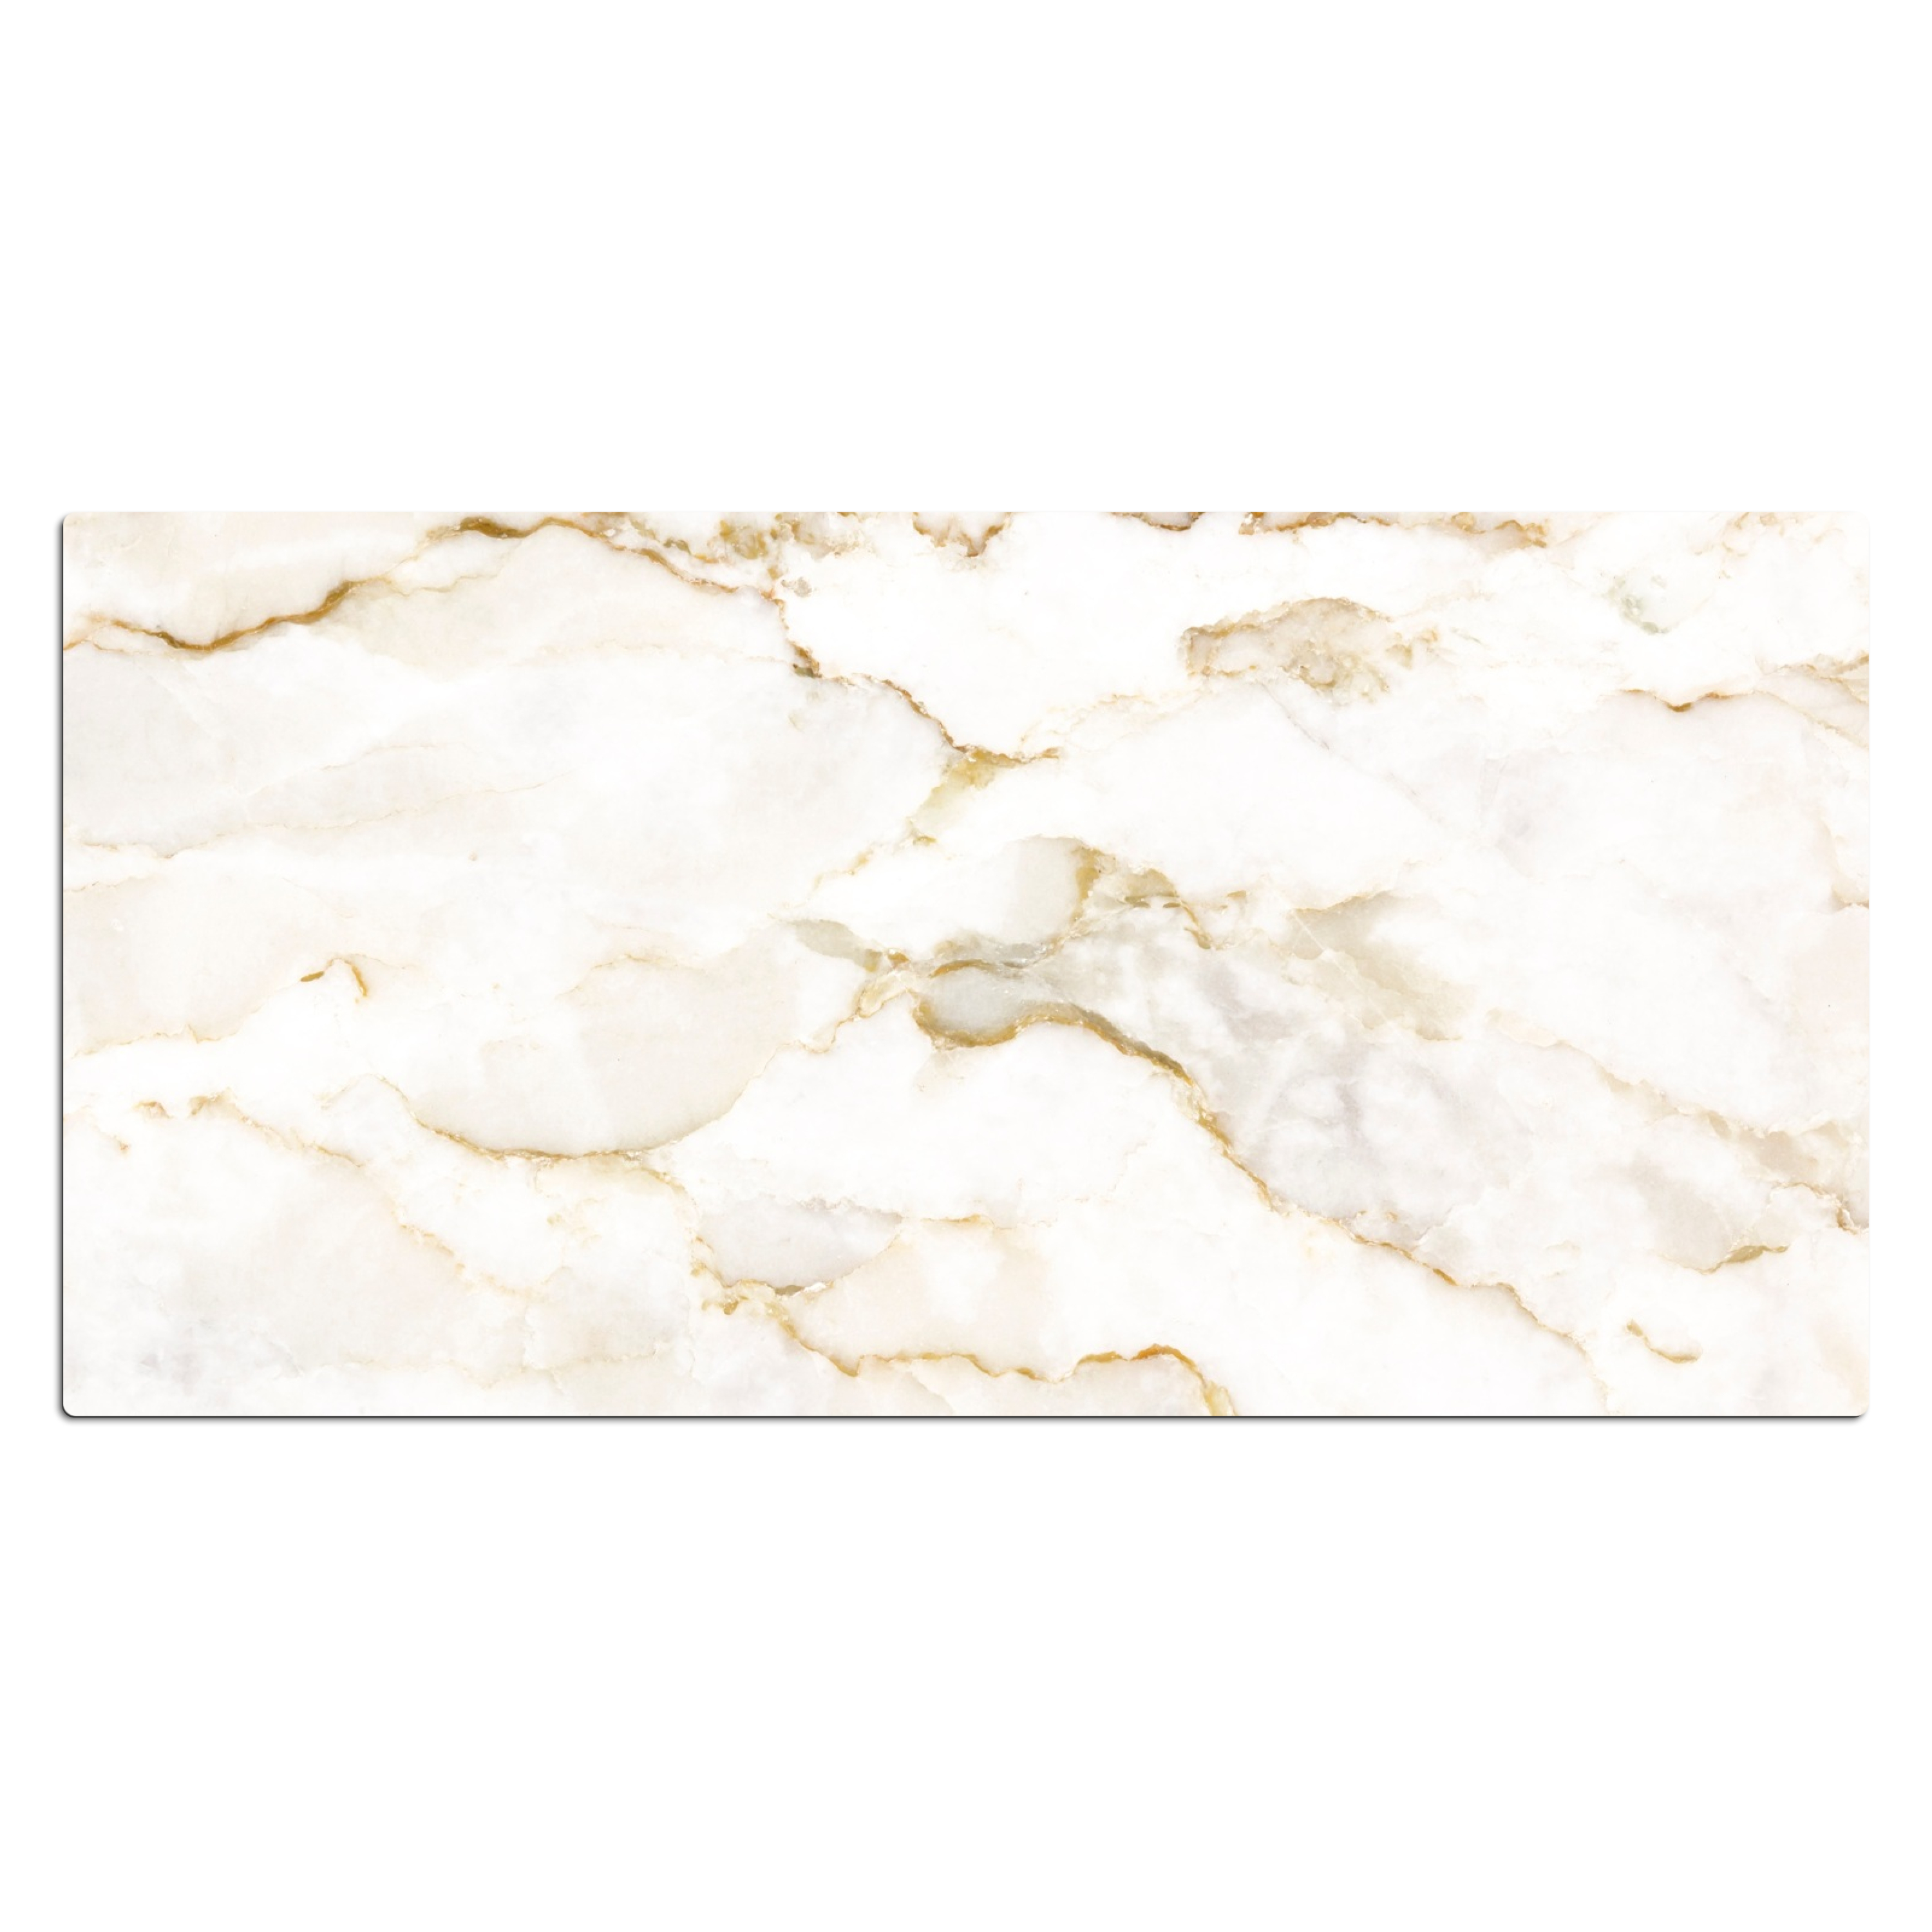 Sous main bureau - Marbre - Citron vert - Or - Luxe - Aspect marbre - Blanc